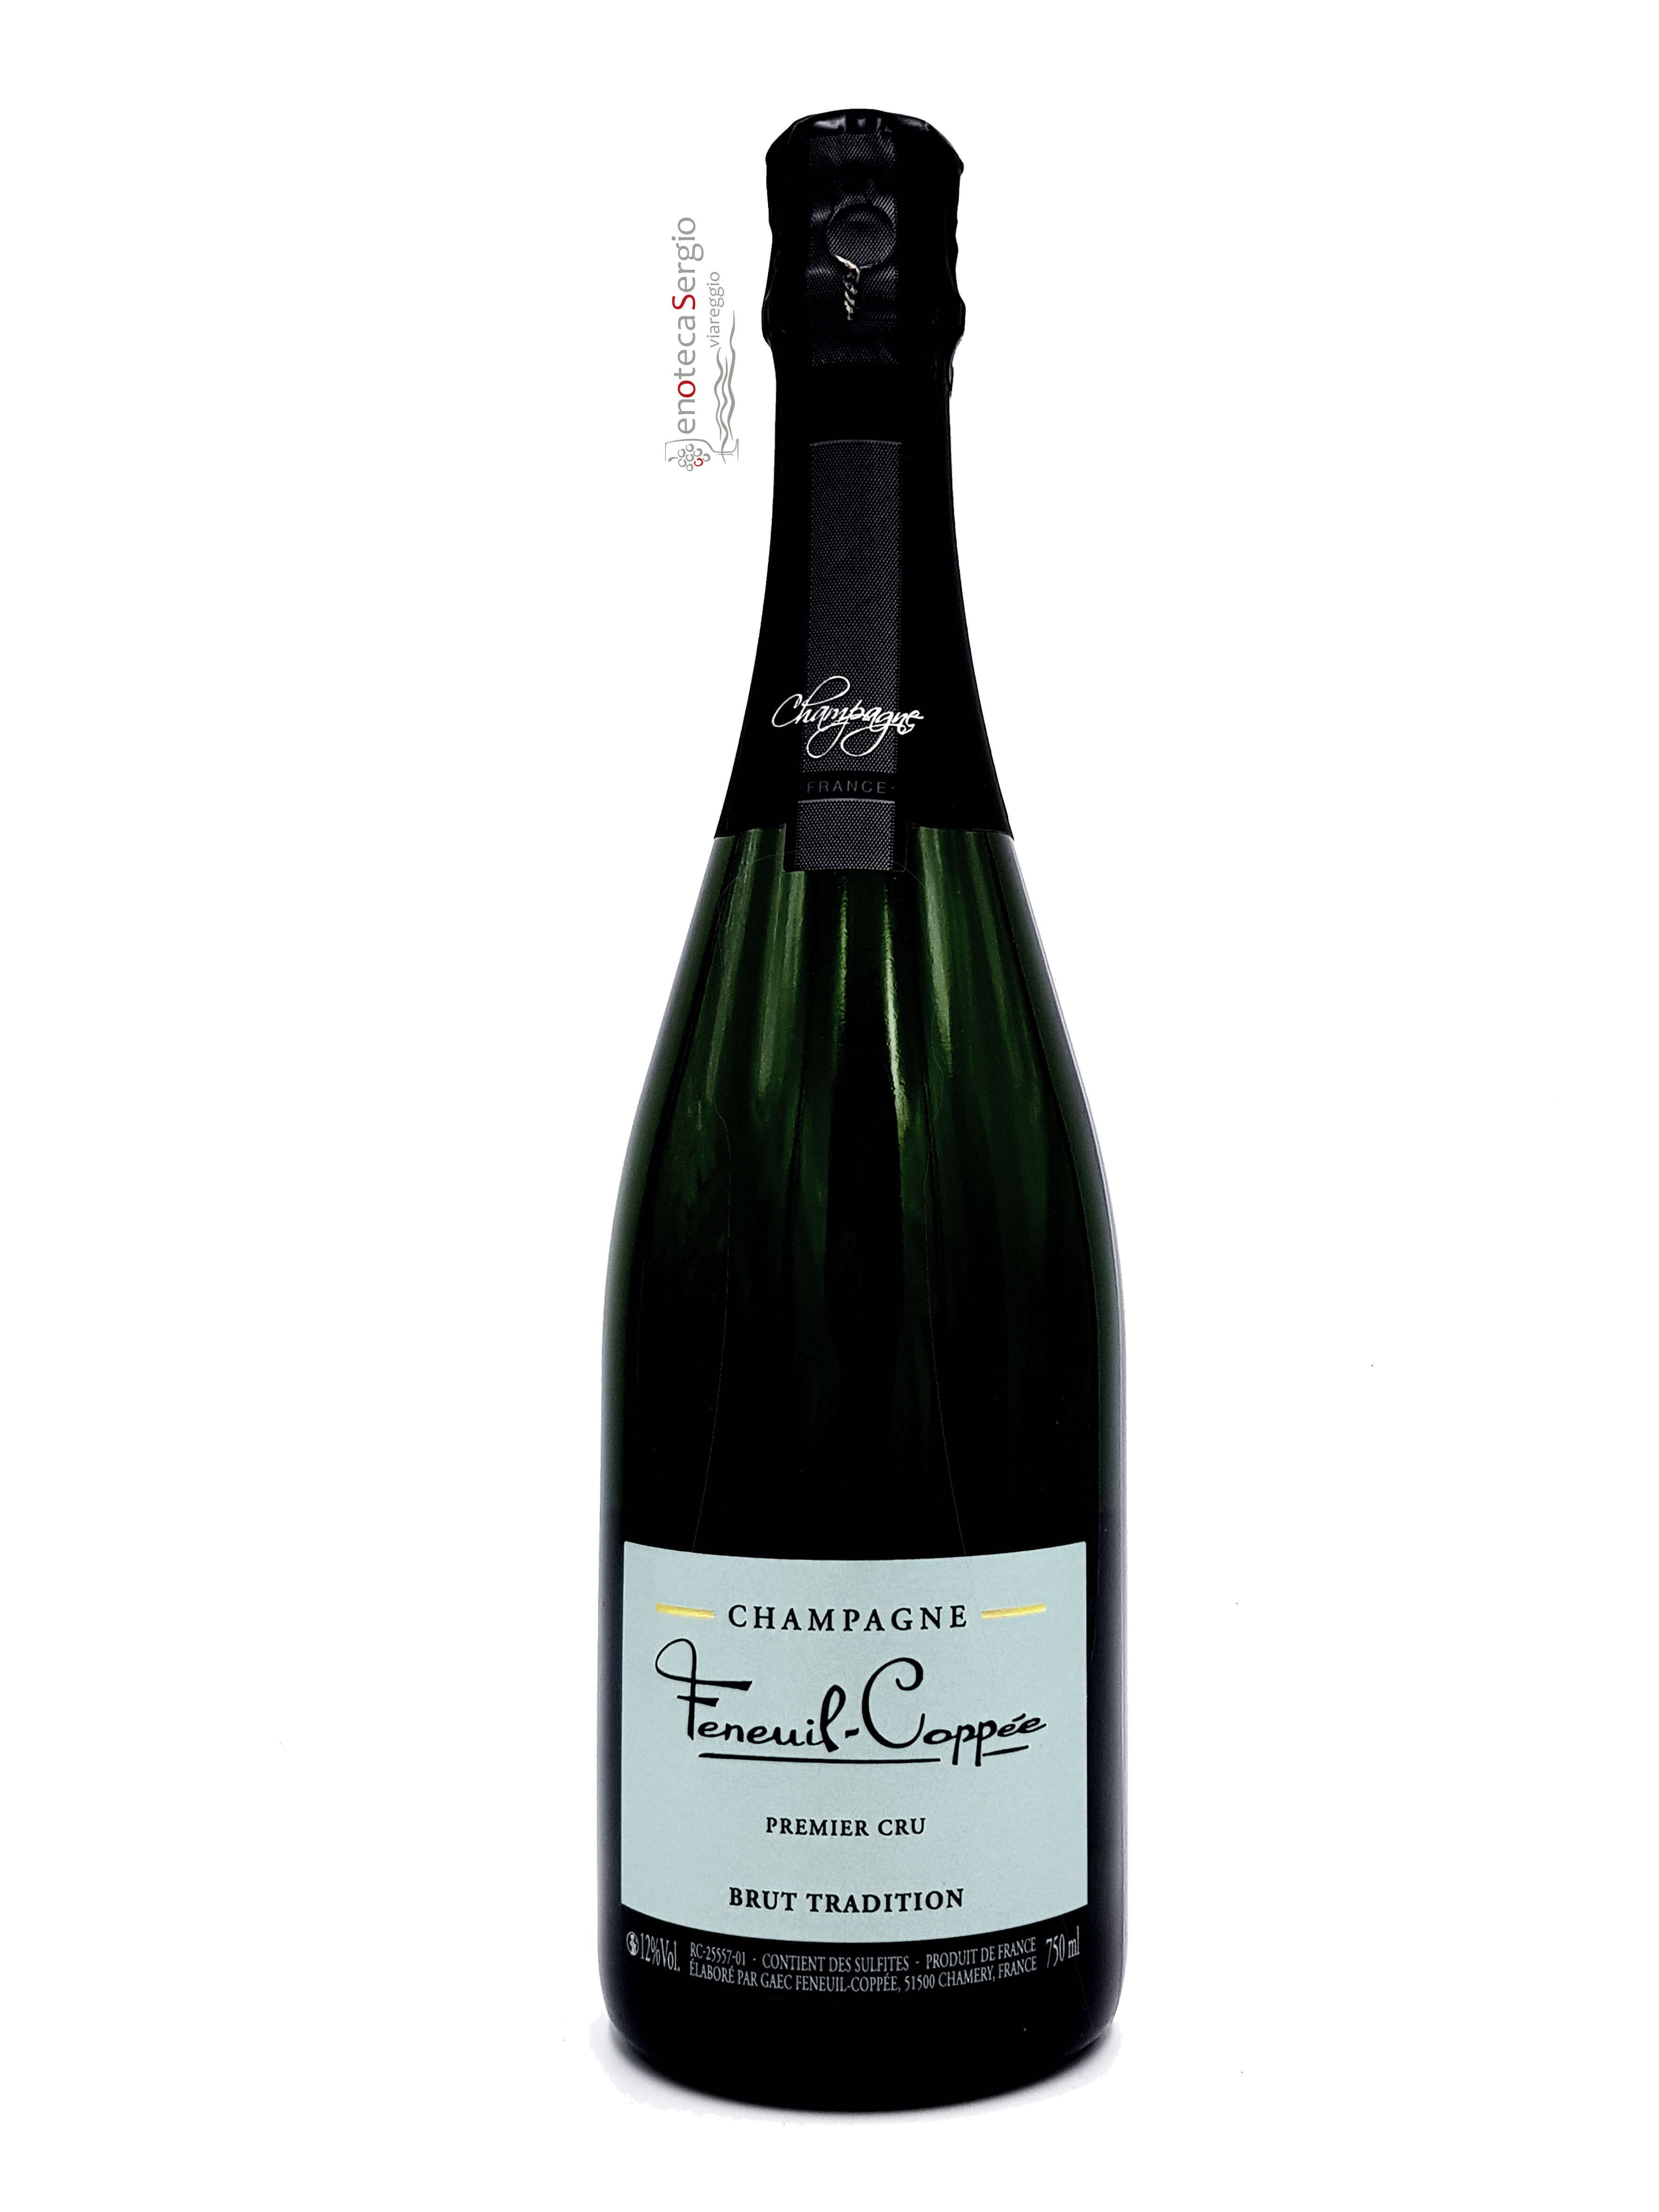 Vini lt Champagne Bottiglia Vendita Coppee AOC | Sergio Viareggio Cru Brut Feneuil Premier 0,375 Enoteca Tradition Online